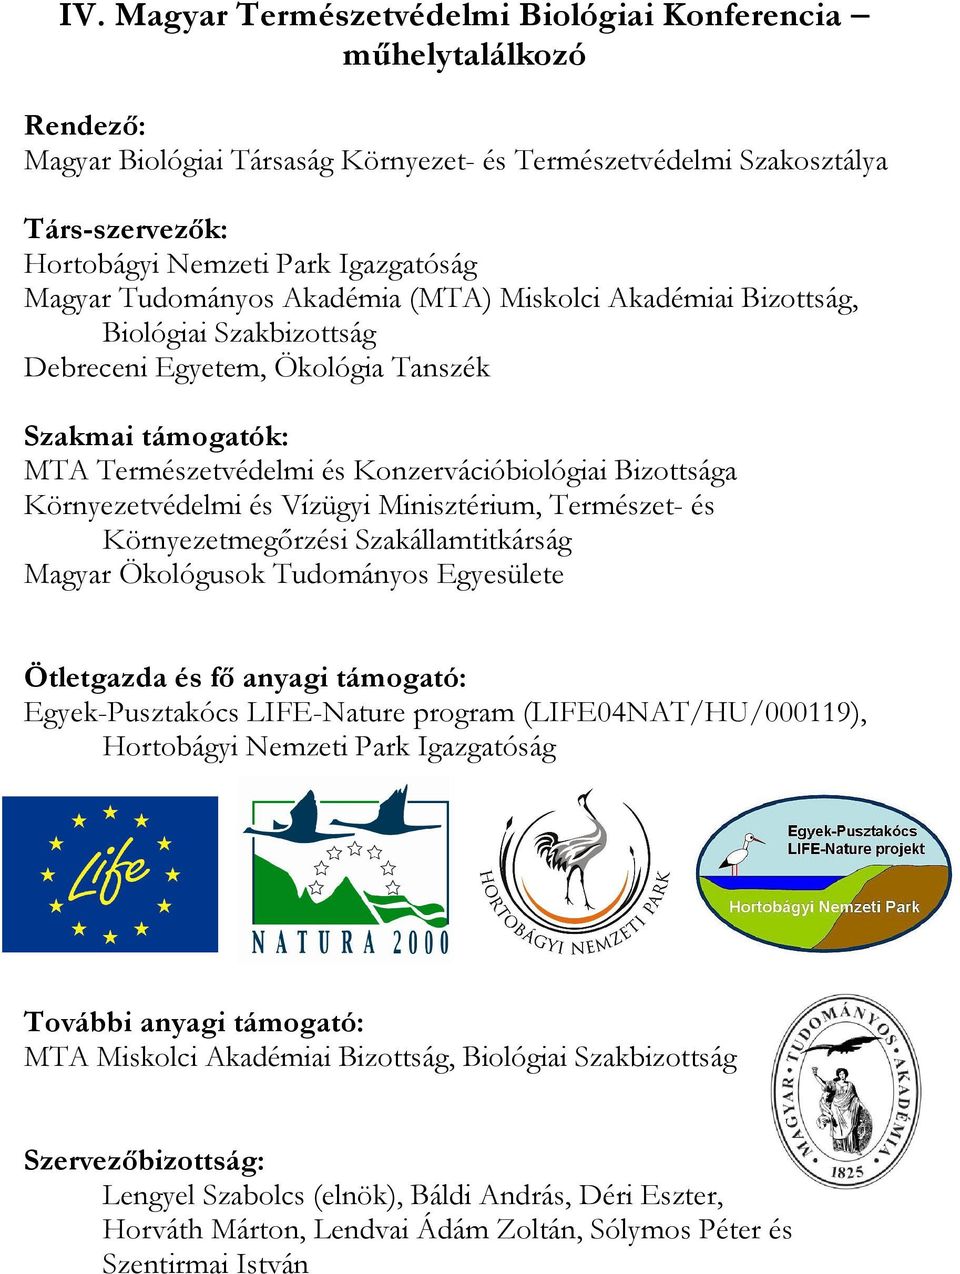 Környezetvédelmi és Vízügyi Minisztérium, Természet- és Környezetmegőrzési Szakállamtitkárság Magyar Ökológusok Tudományos Egyesülete Ötletgazda és fő anyagi támogató: Egyek-Pusztakócs LIFE-Nature